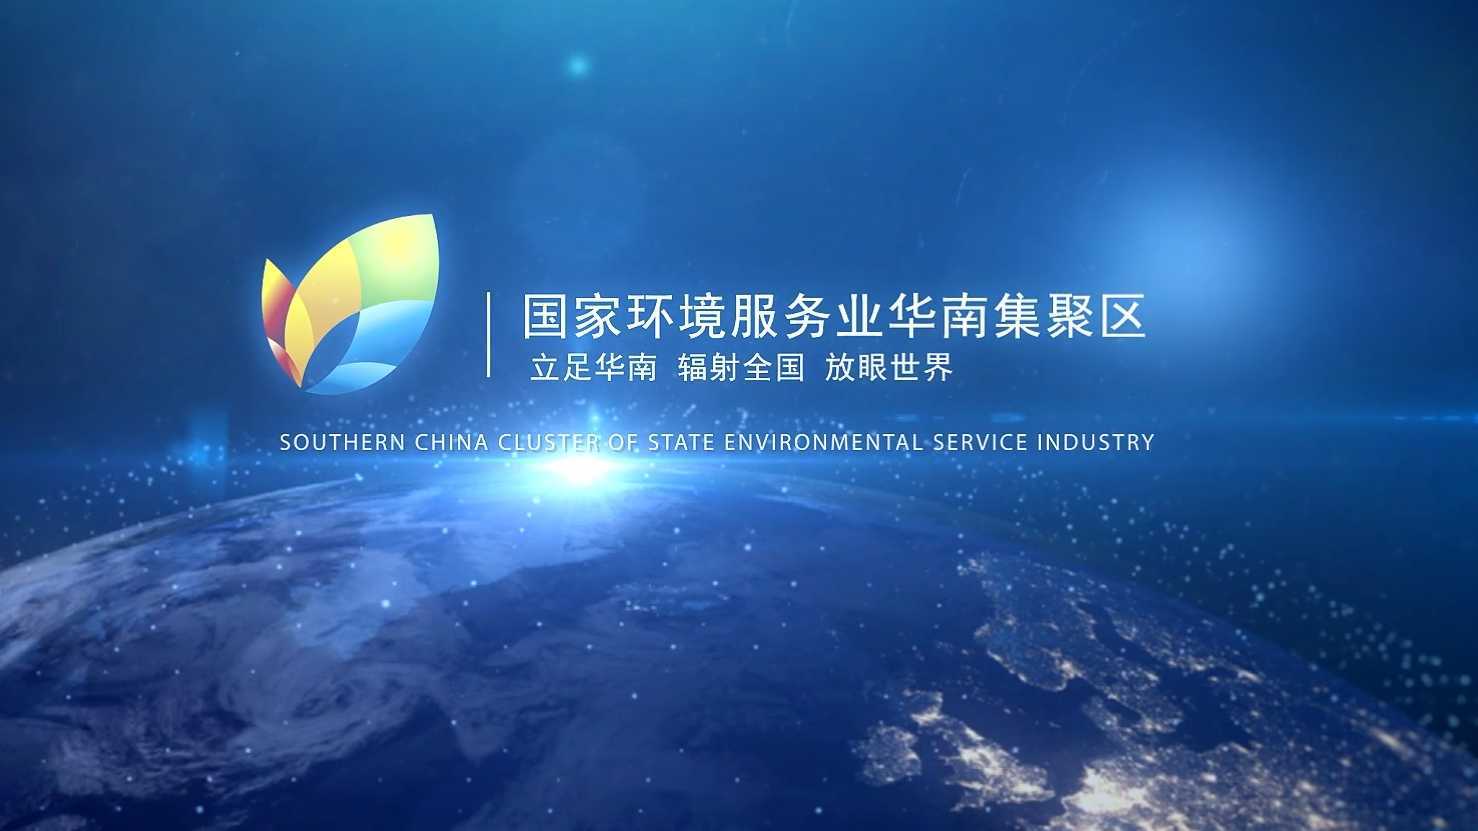 单位宣传片 | 国家环境服务业华南集聚区 2022